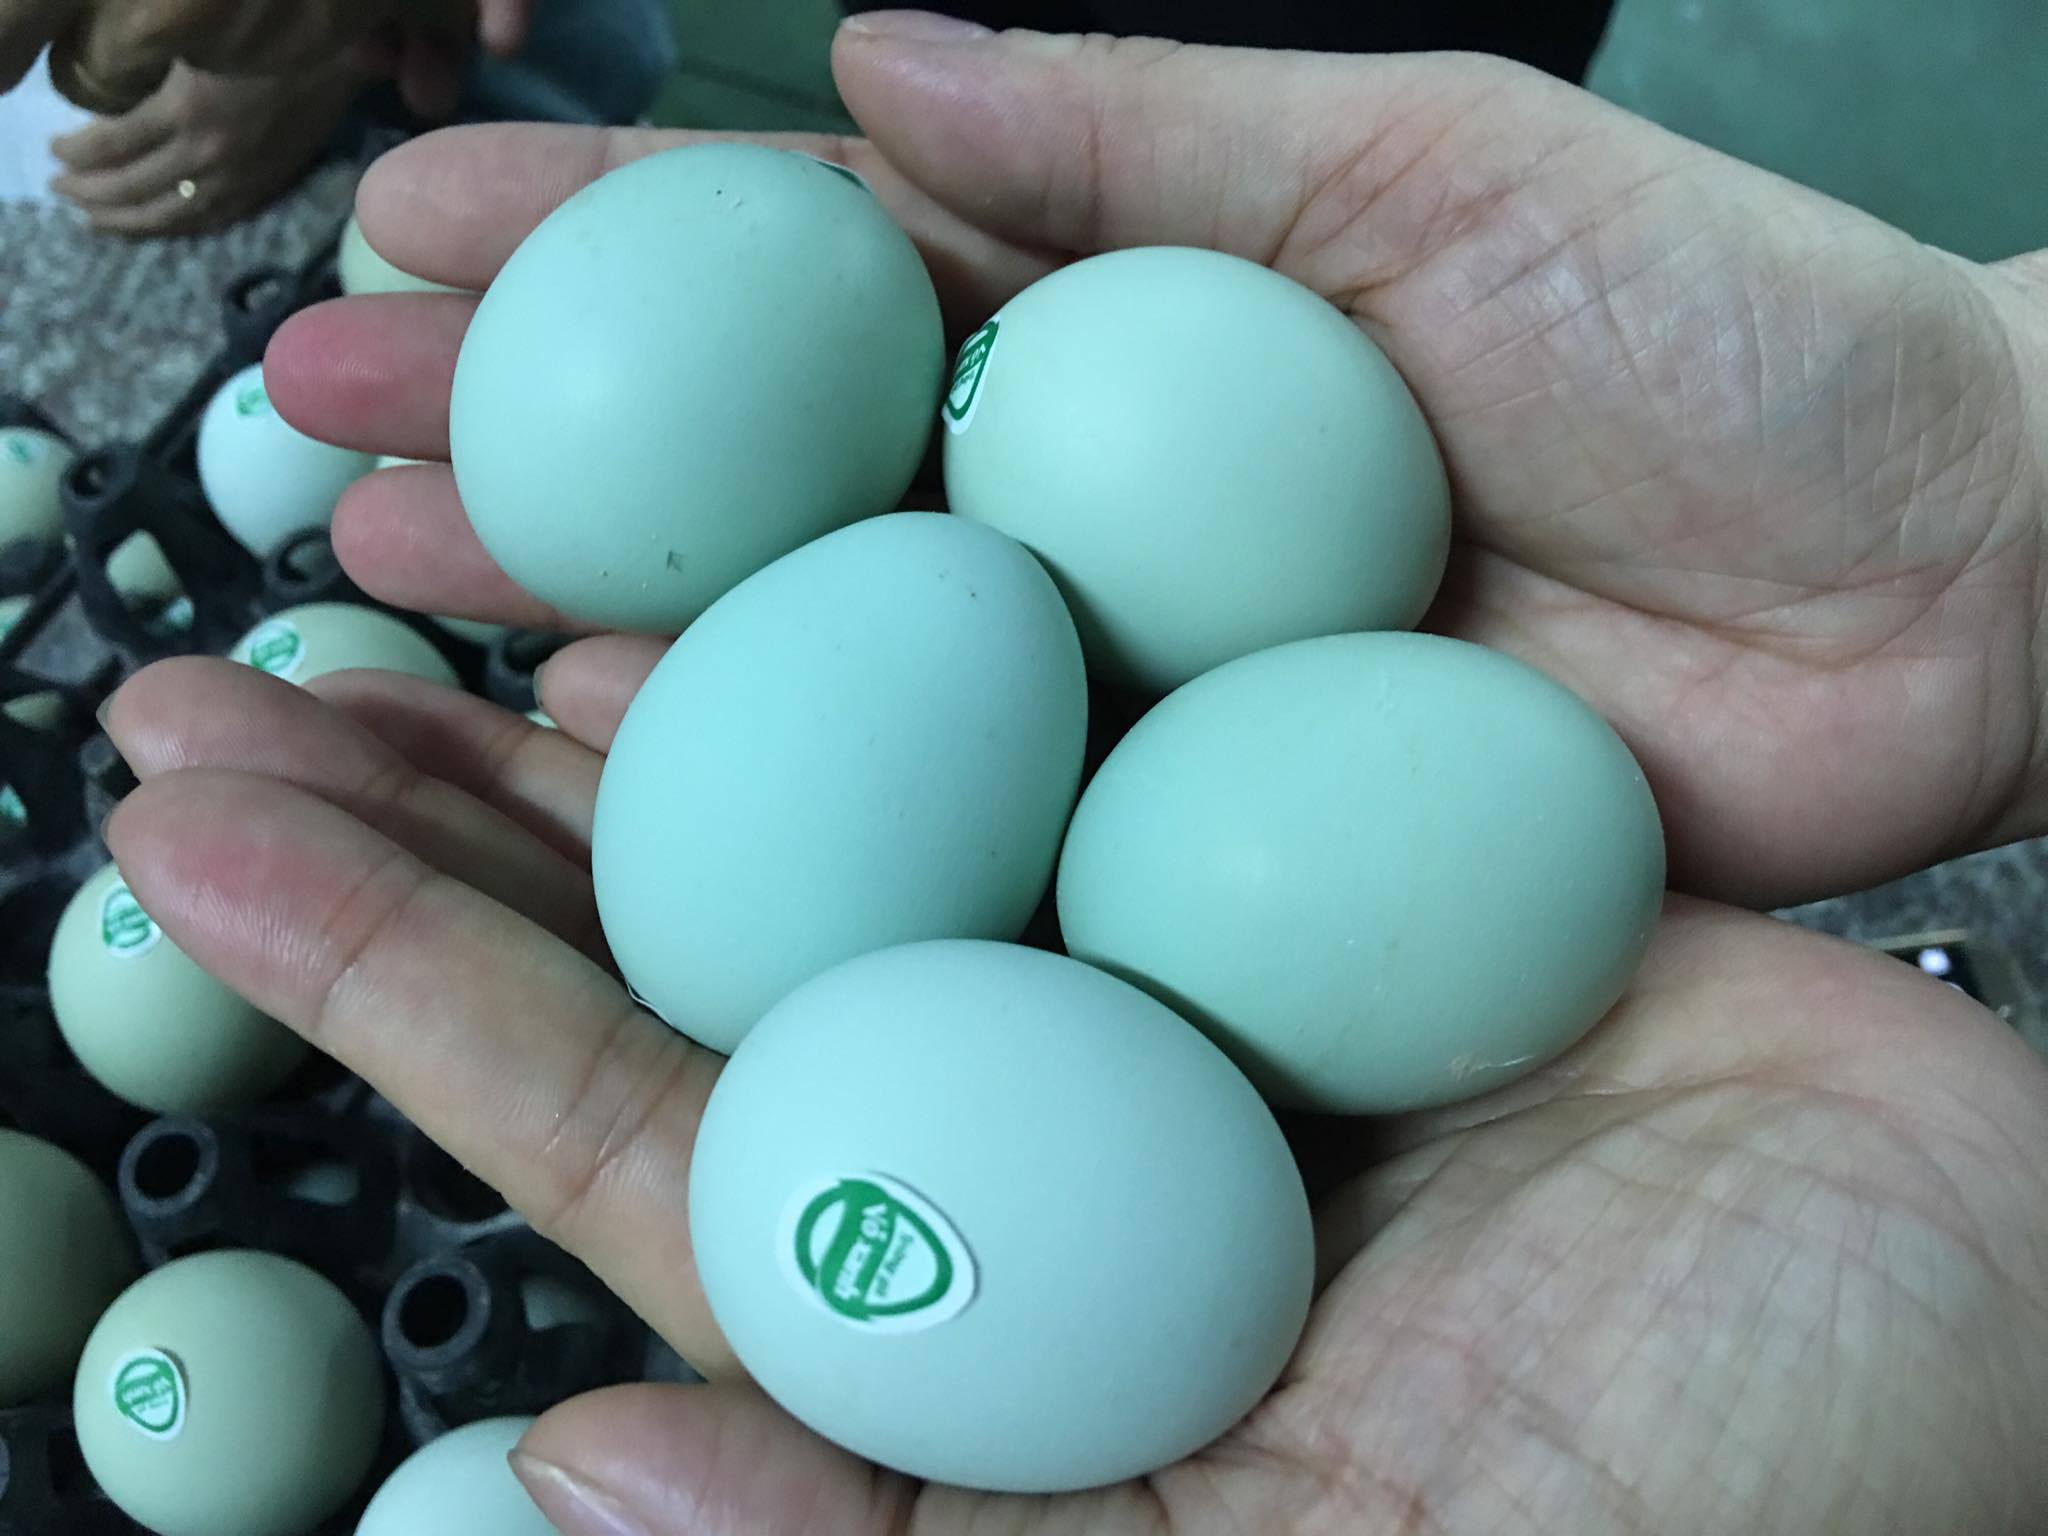 trứng gà vỏ xanh, trứng gà lạ, xuất hiện trứng gà vỏ xanh, trứng gà, trứng gà cao cấp